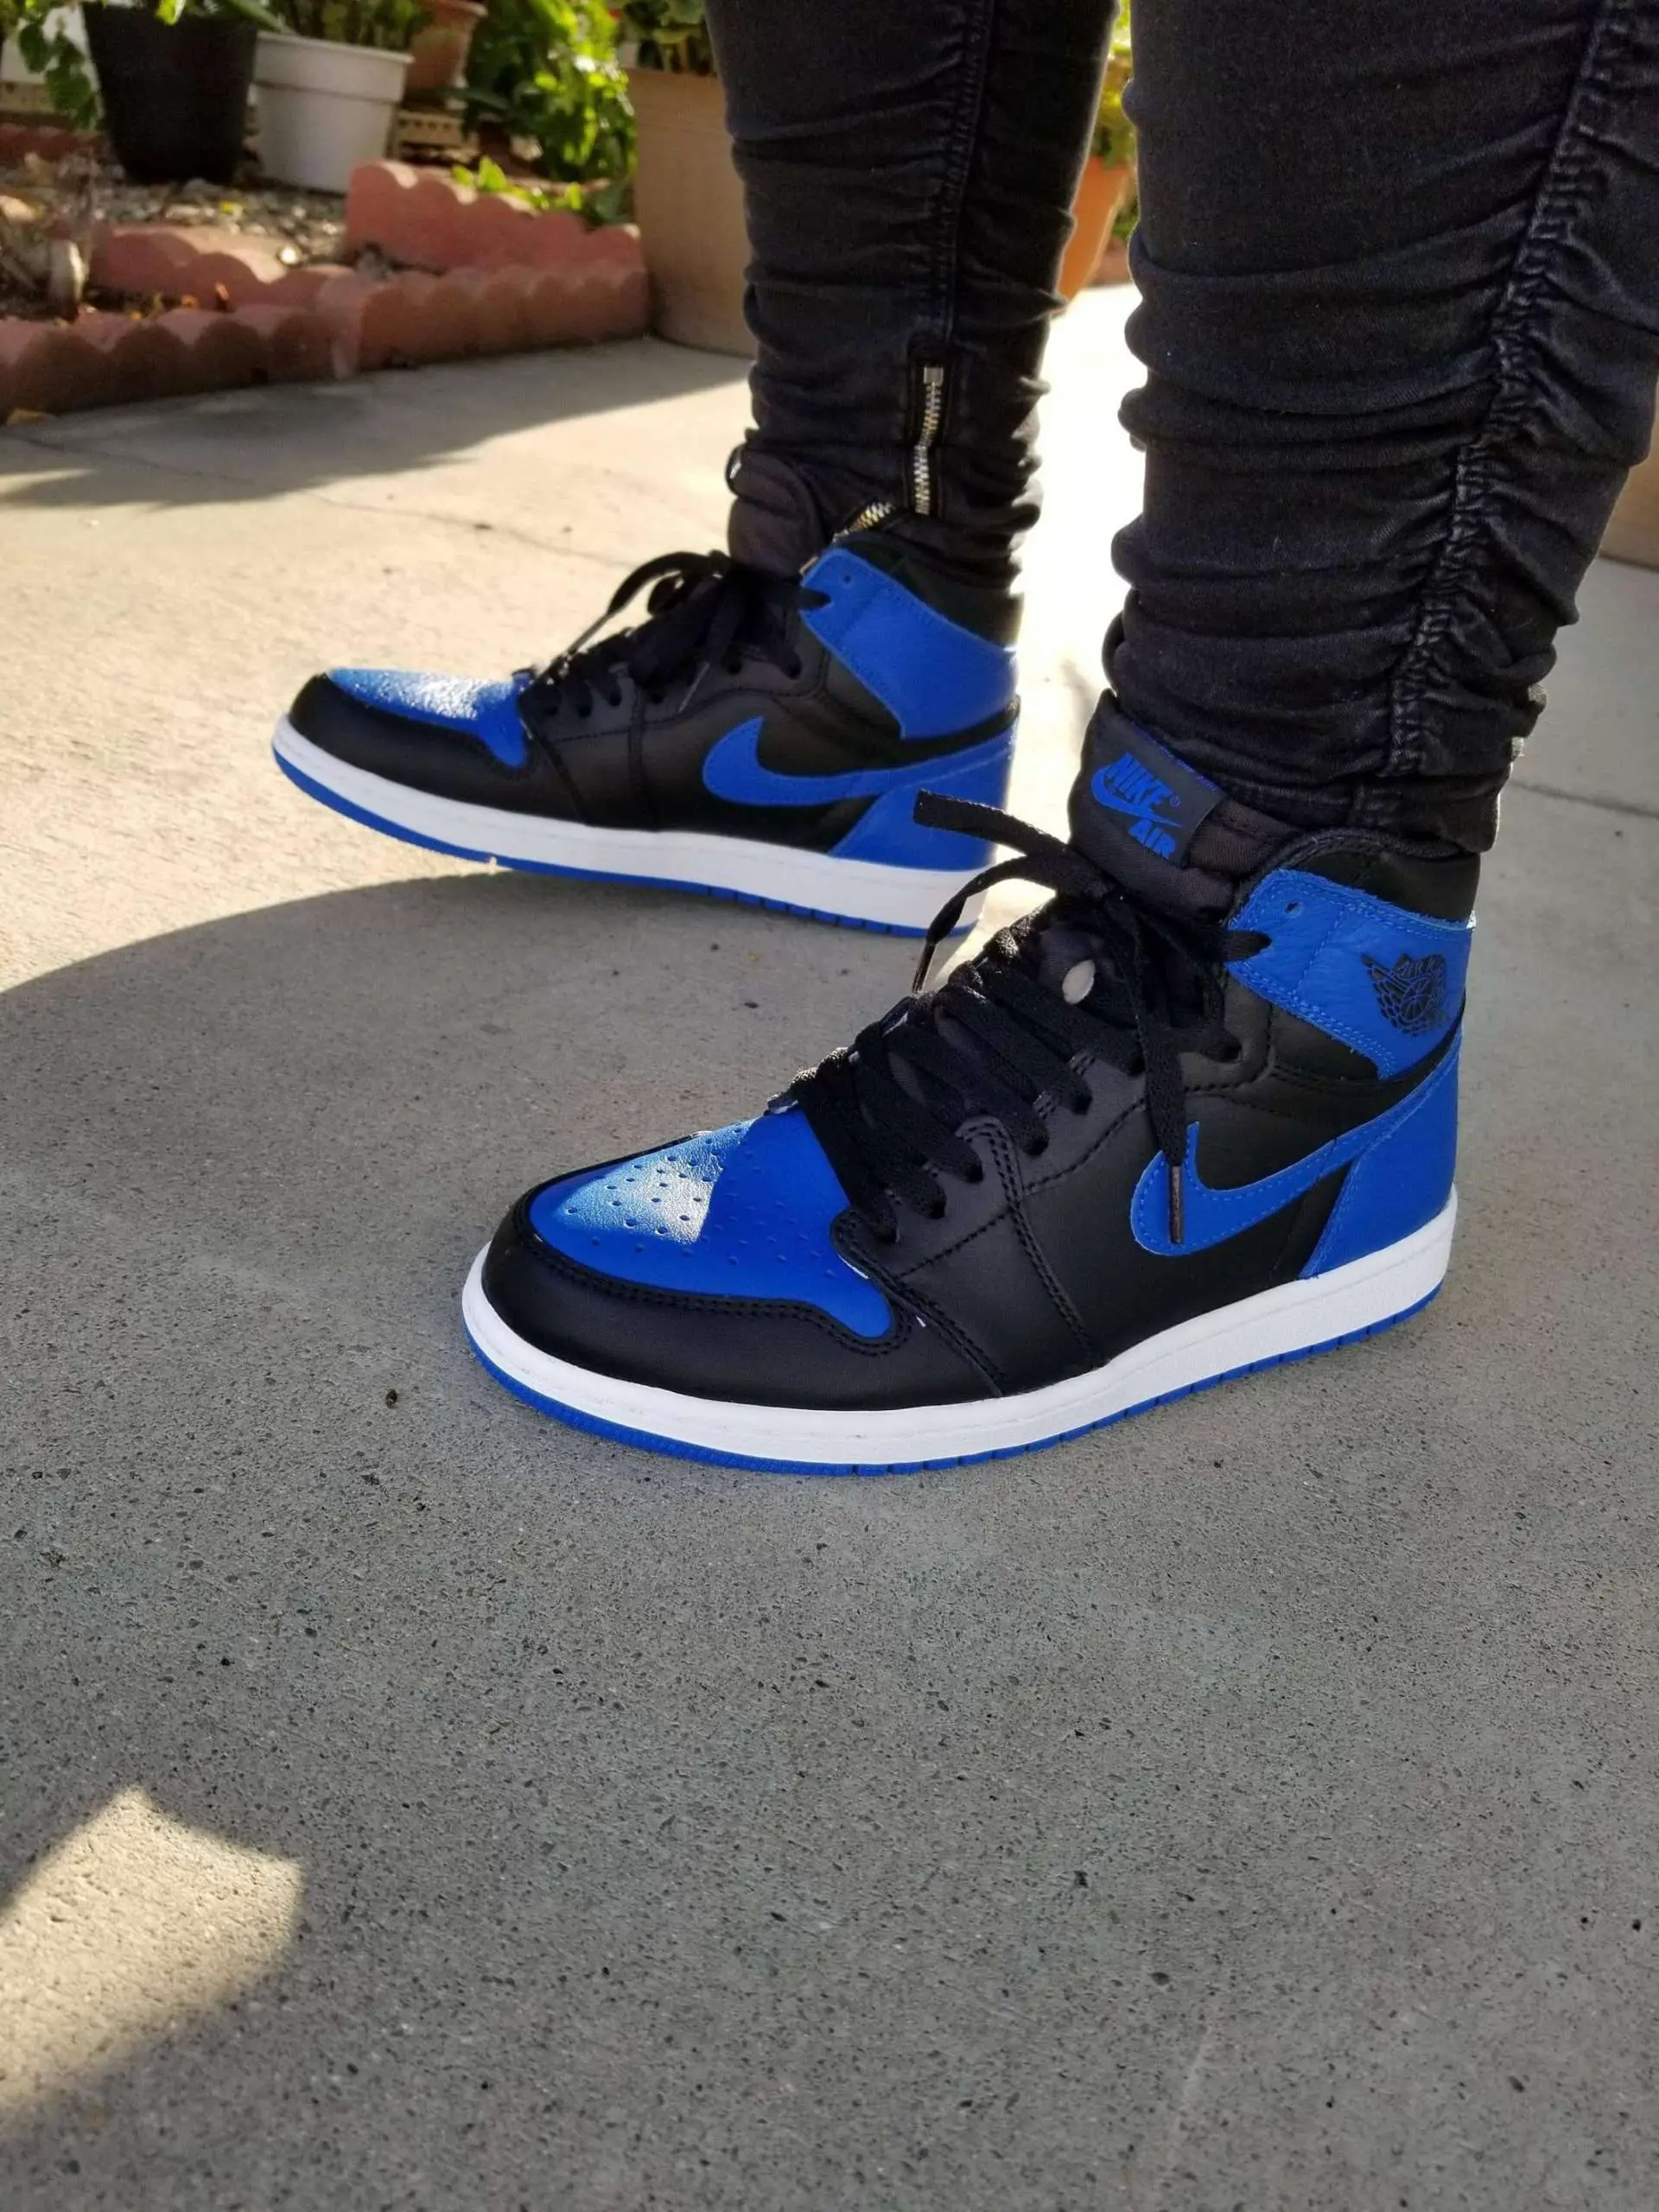 My first ever pair of Jordans! : Sneakers